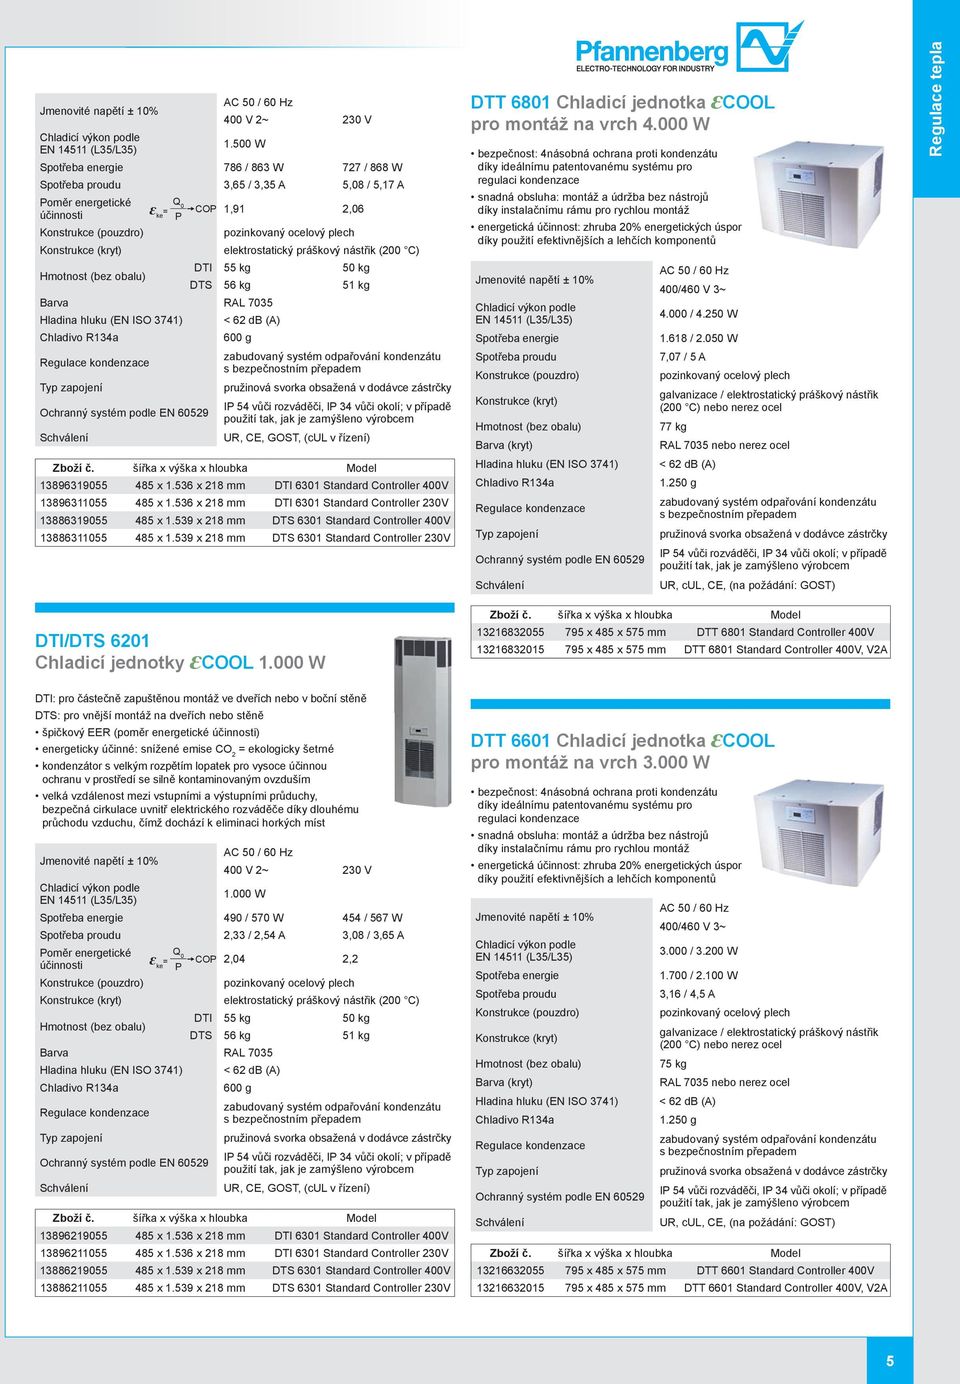 Konstrukce (kryt) elektrostatický práškový nástřik (200 C) (bez obalu) DTI 55 kg 50 kg DTS 56 kg 51 kg Hladina hluku (EN ISO 3741) < 62 db (A) Chladivo R134a 600 g Regulace kondenzace zabudovaný